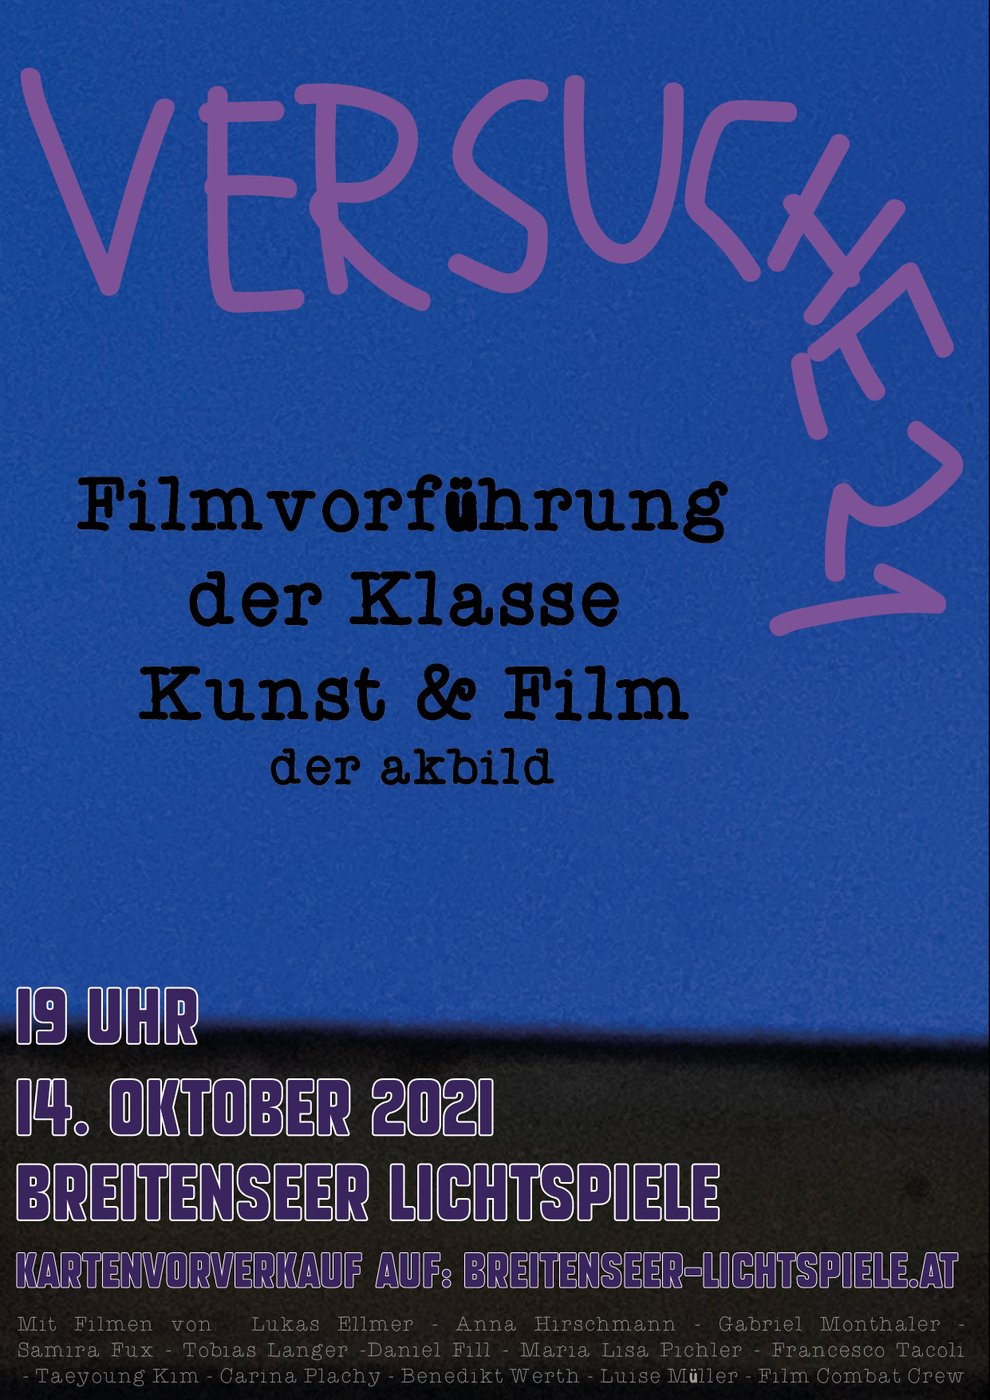 Filmscreening by the studio Art and Film.
 
 
  
  
 
 
  https://www.breitenseer-lichtspiele.at/event/versuche-21-filmvorfuehrung-der-klasse-kunstfilm/